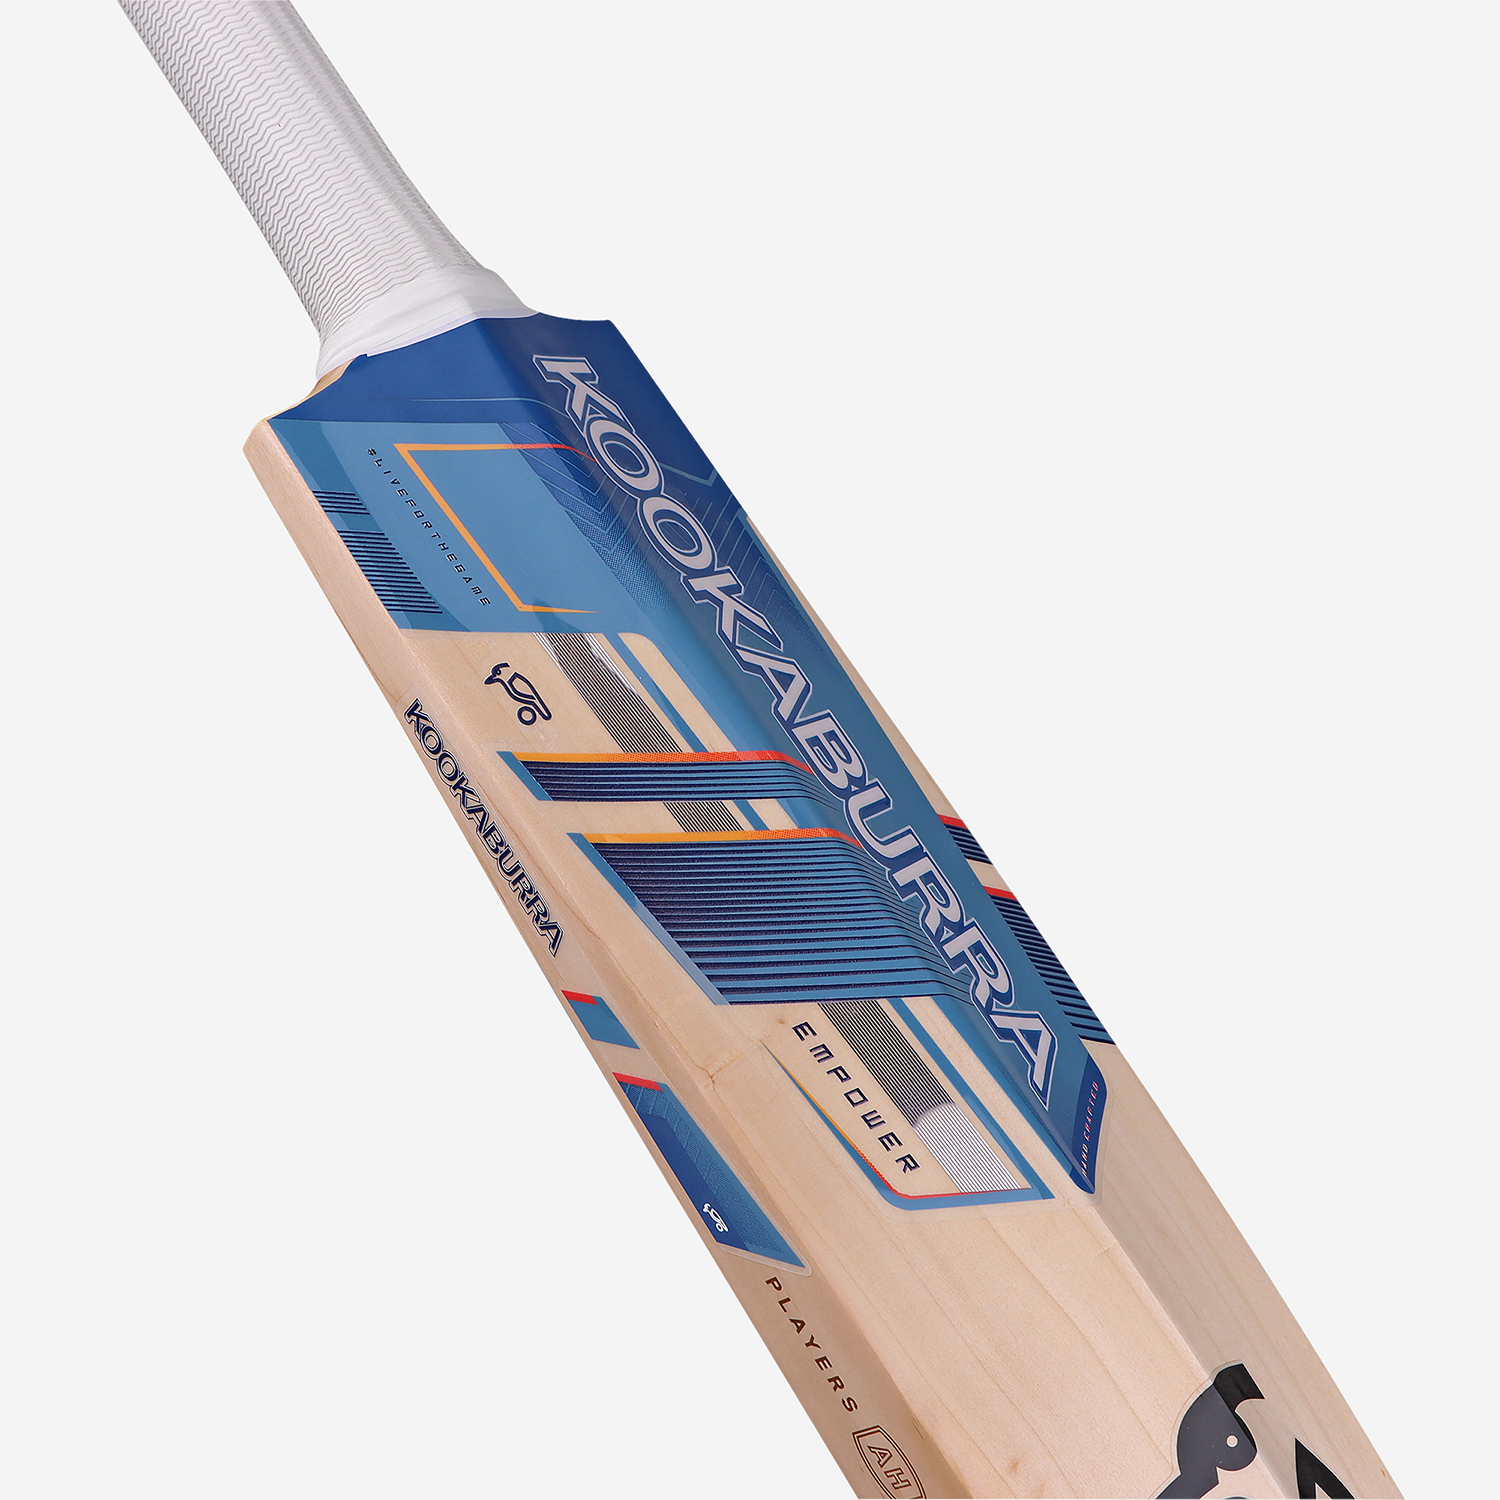 Alyssa Healy Players Replica Cricket Bat